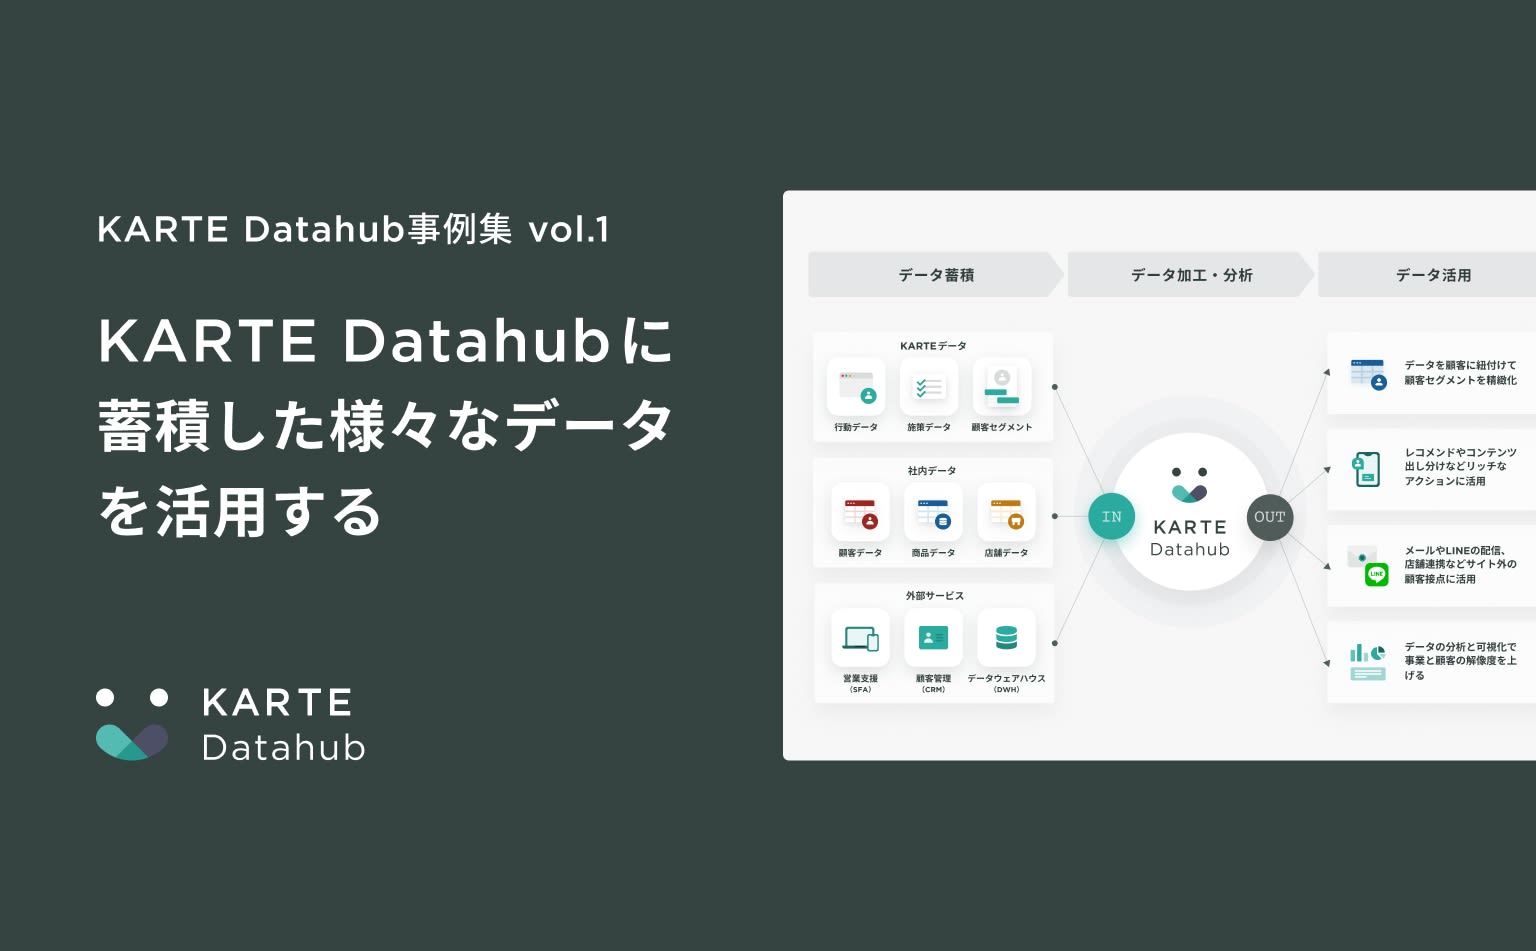 KARTE Datahubに蓄積した様々なデータを活用する｜KARTE Datahub事例集 vol.1